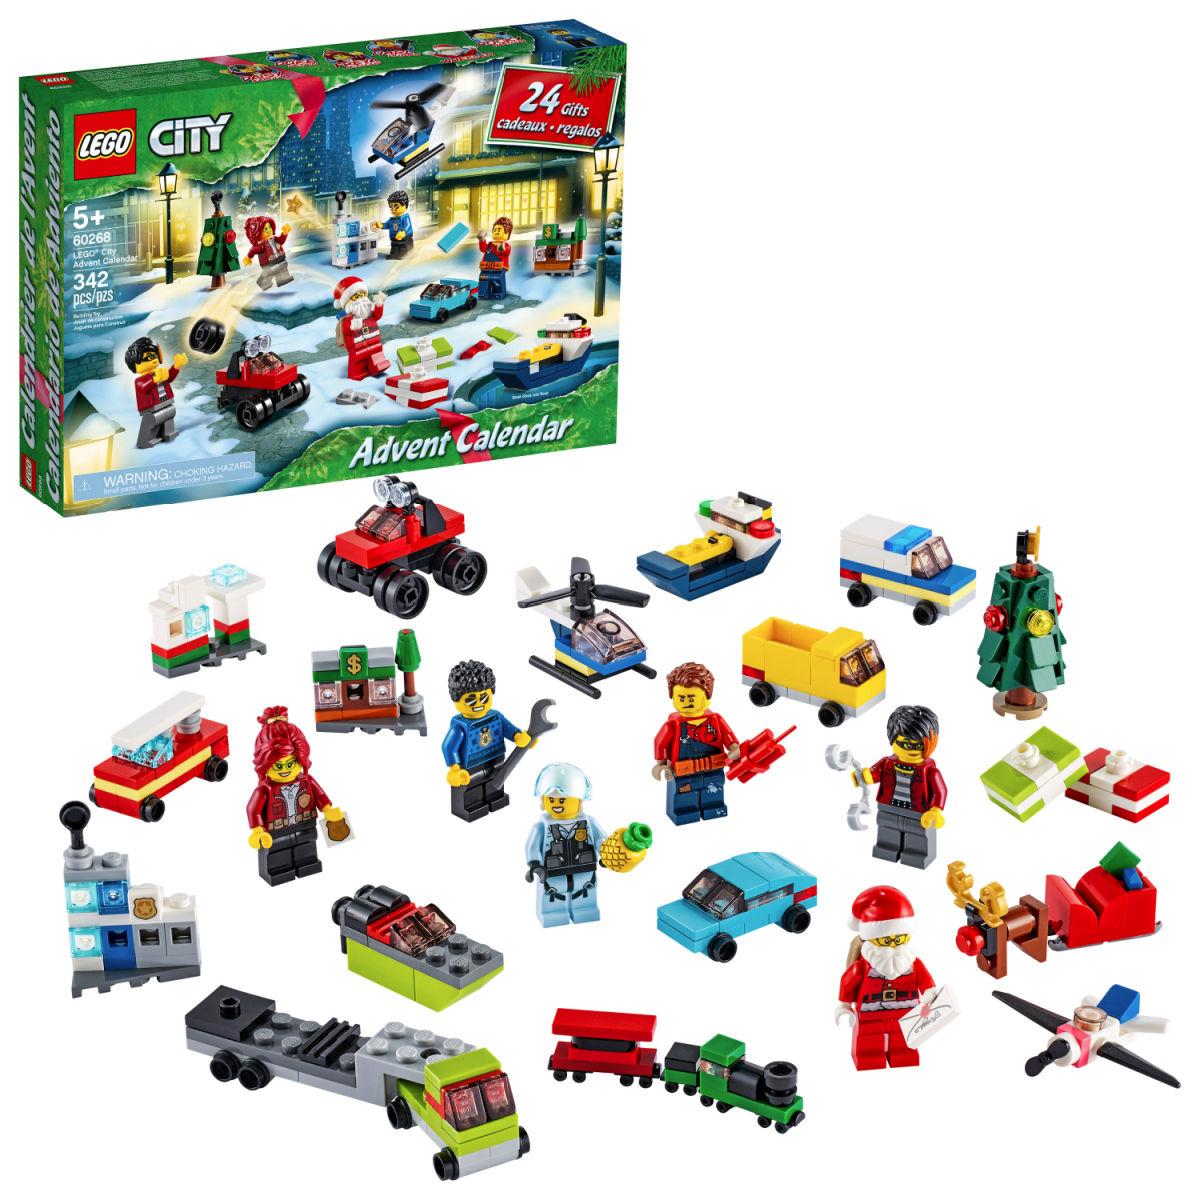 LEGO City Advent Calendar 60268